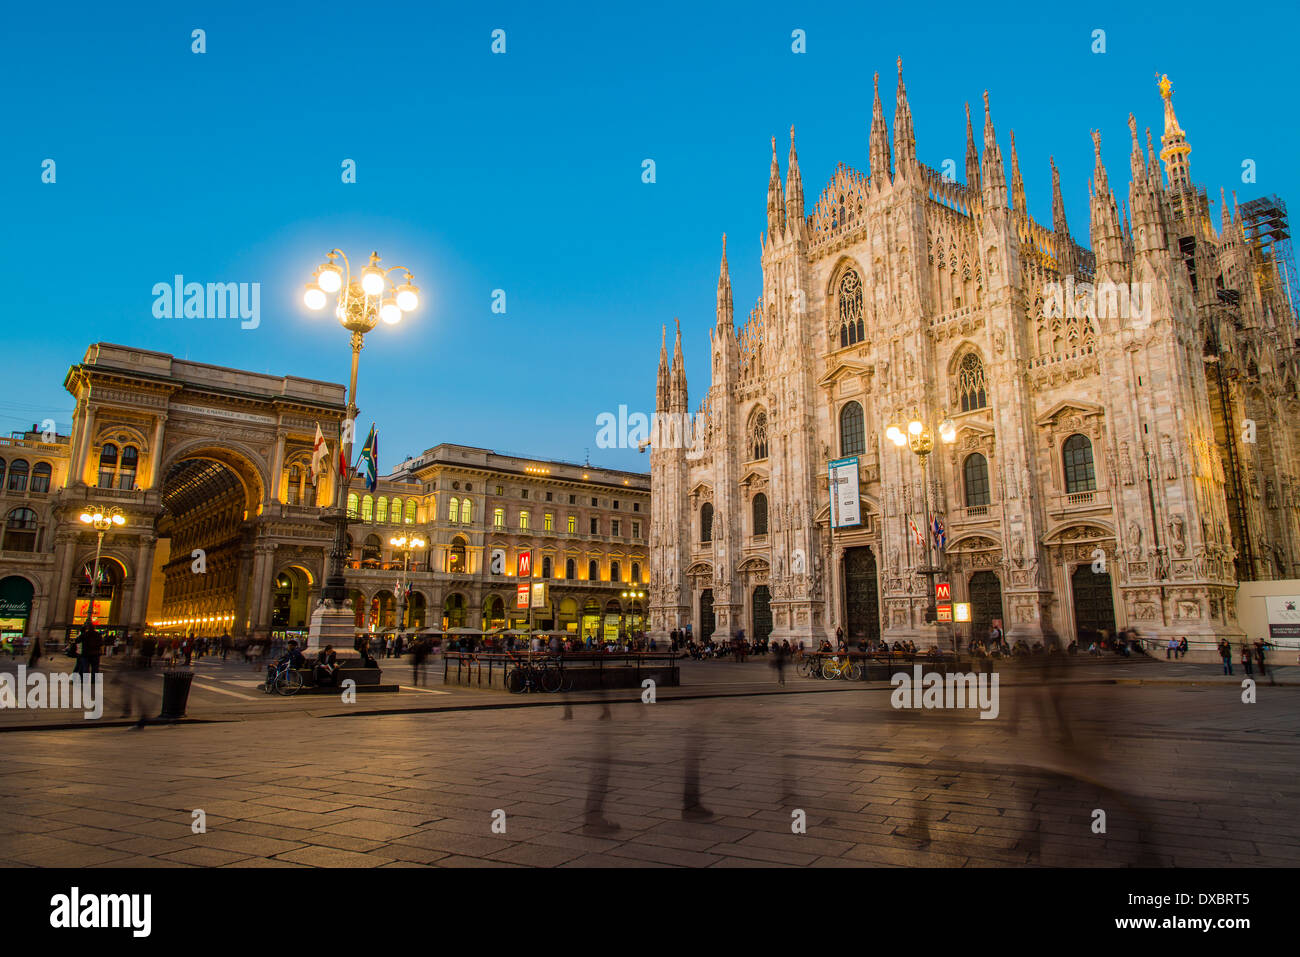 Place Piazza del Duomo avec la cathédrale gothique Duomo de nuit, Milan, Lombardie, Italie Banque D'Images